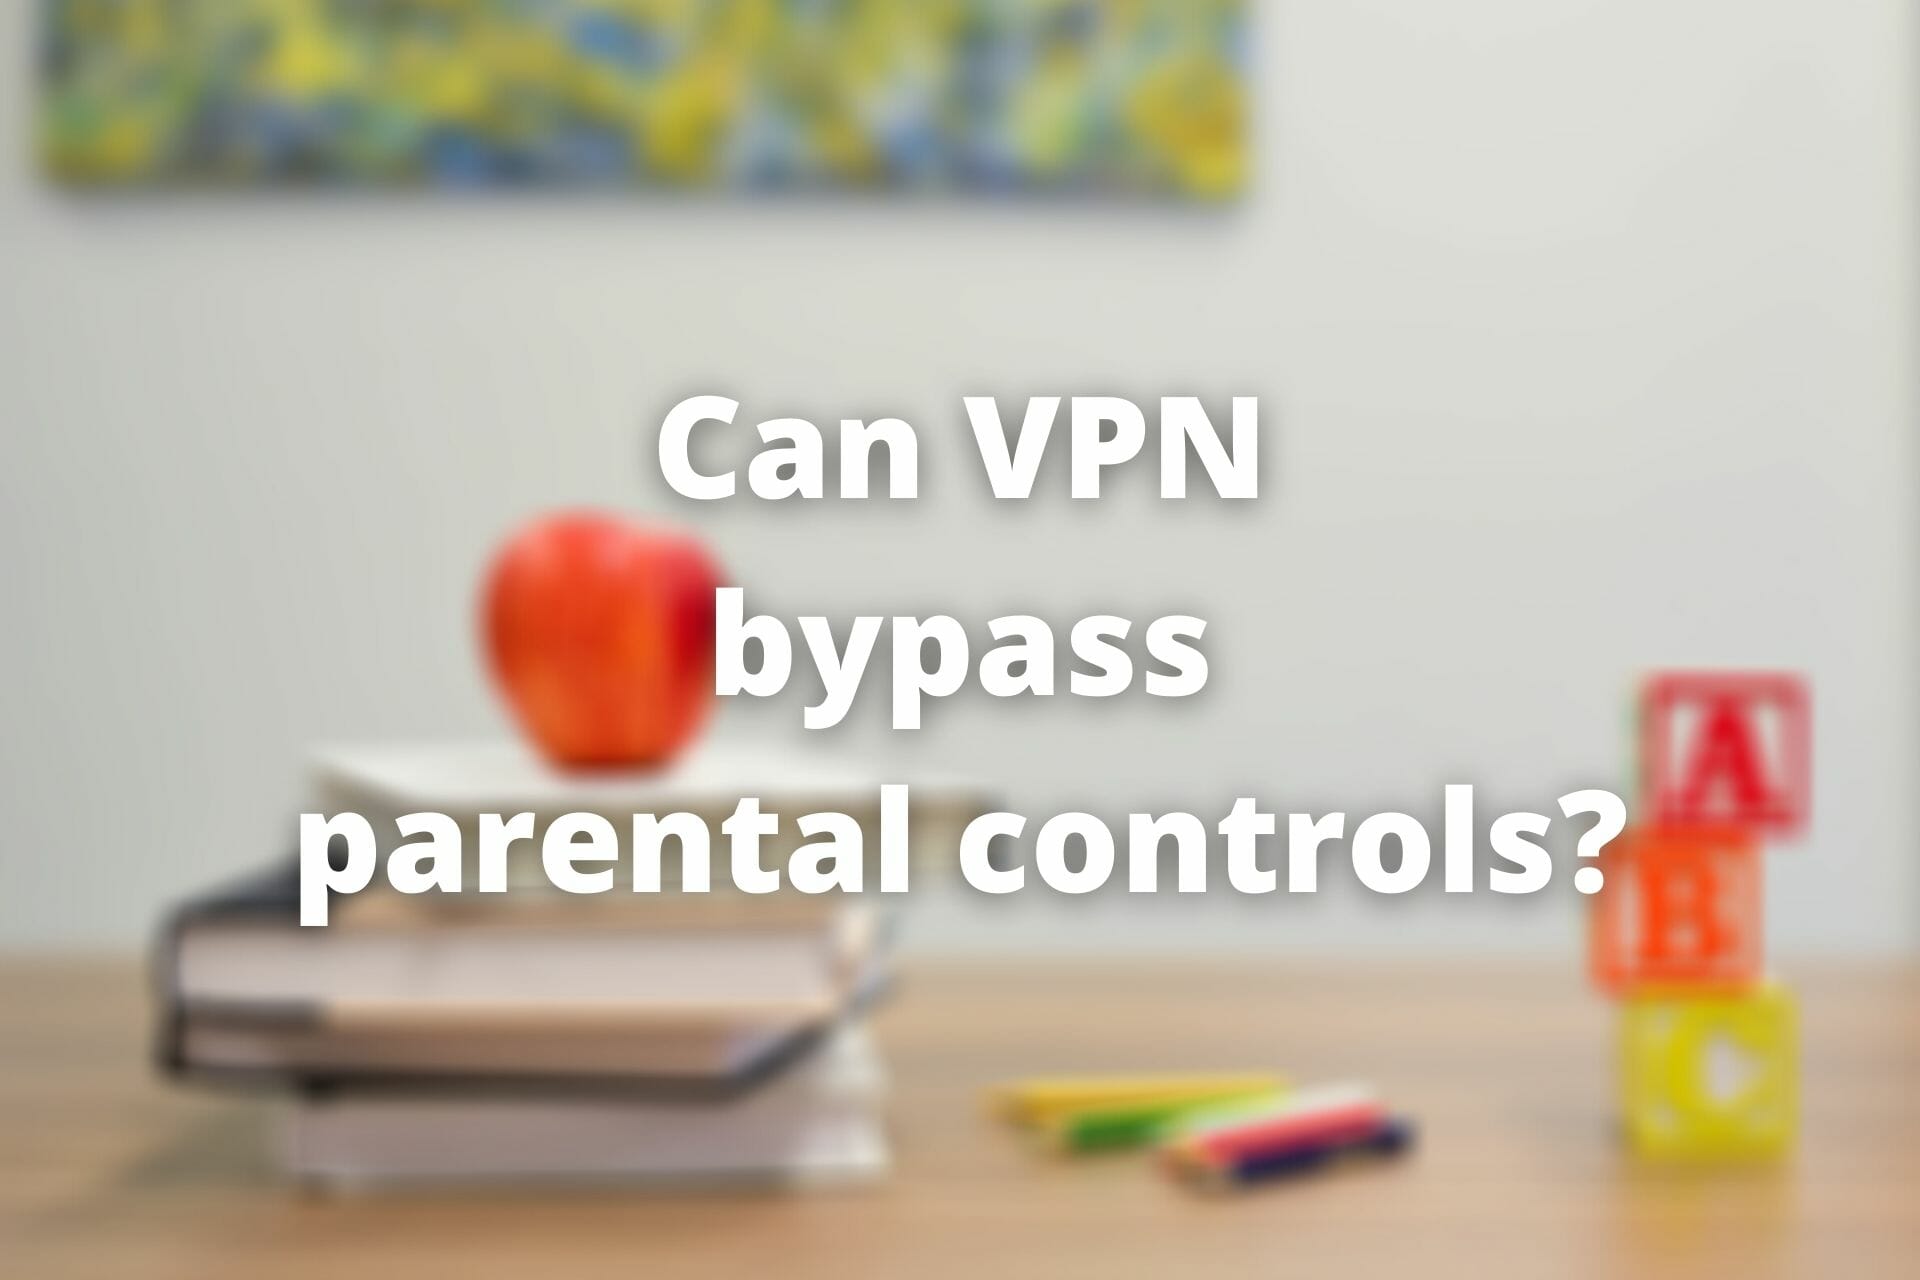 VPN bypass parental controls